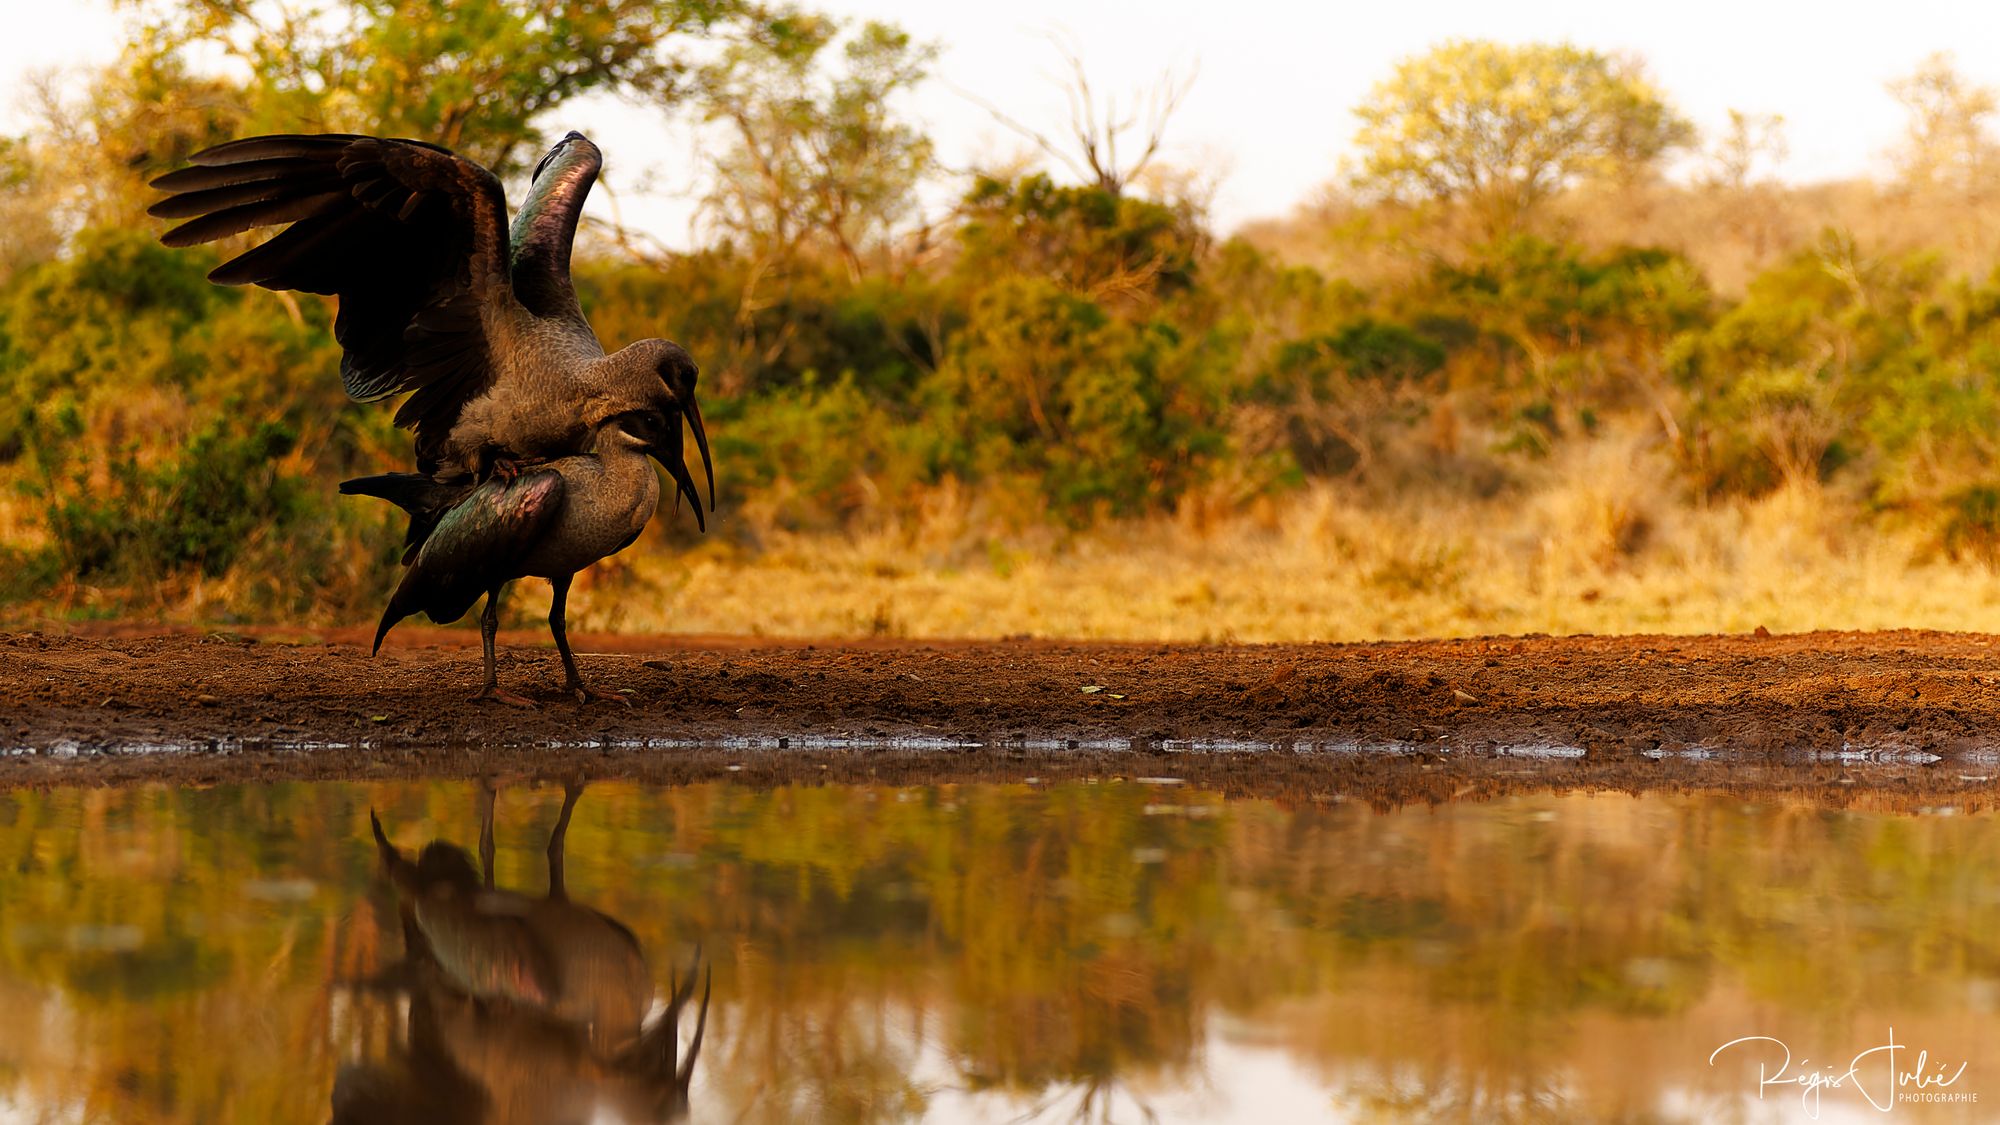 Zimanga : Oiseaux - Interactions